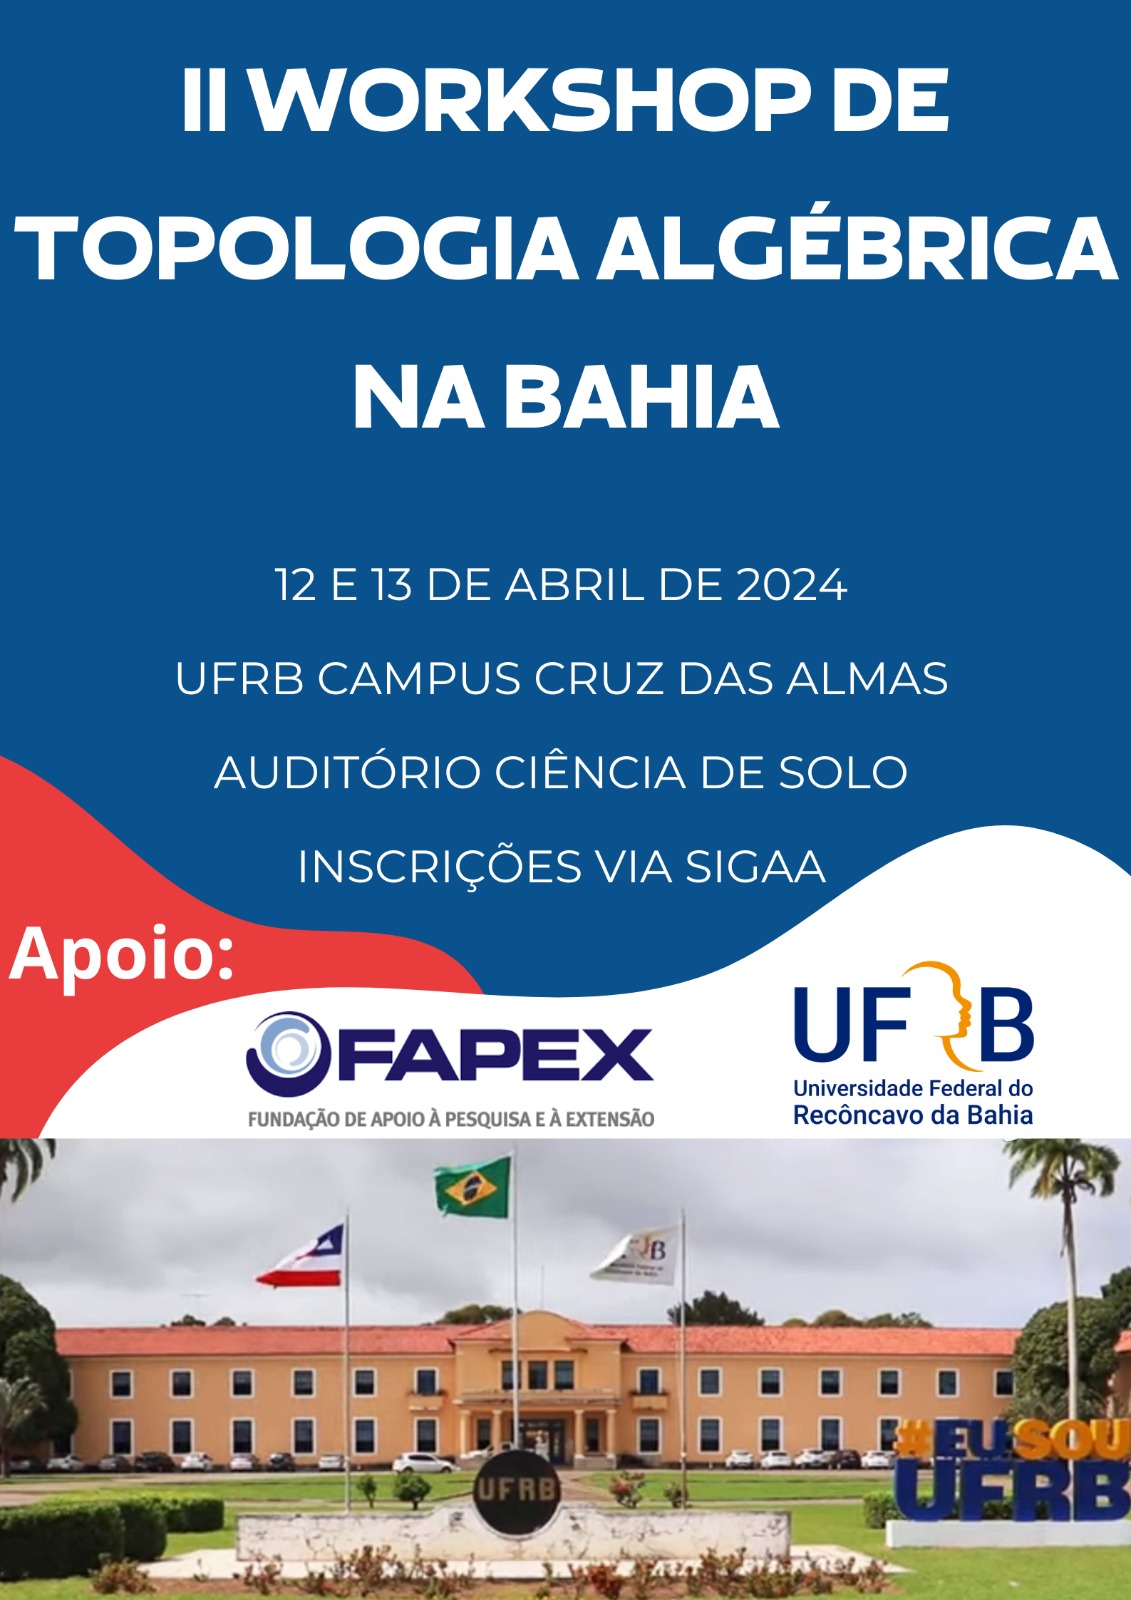 II Workshop de Topologia Algébrica na Bahia